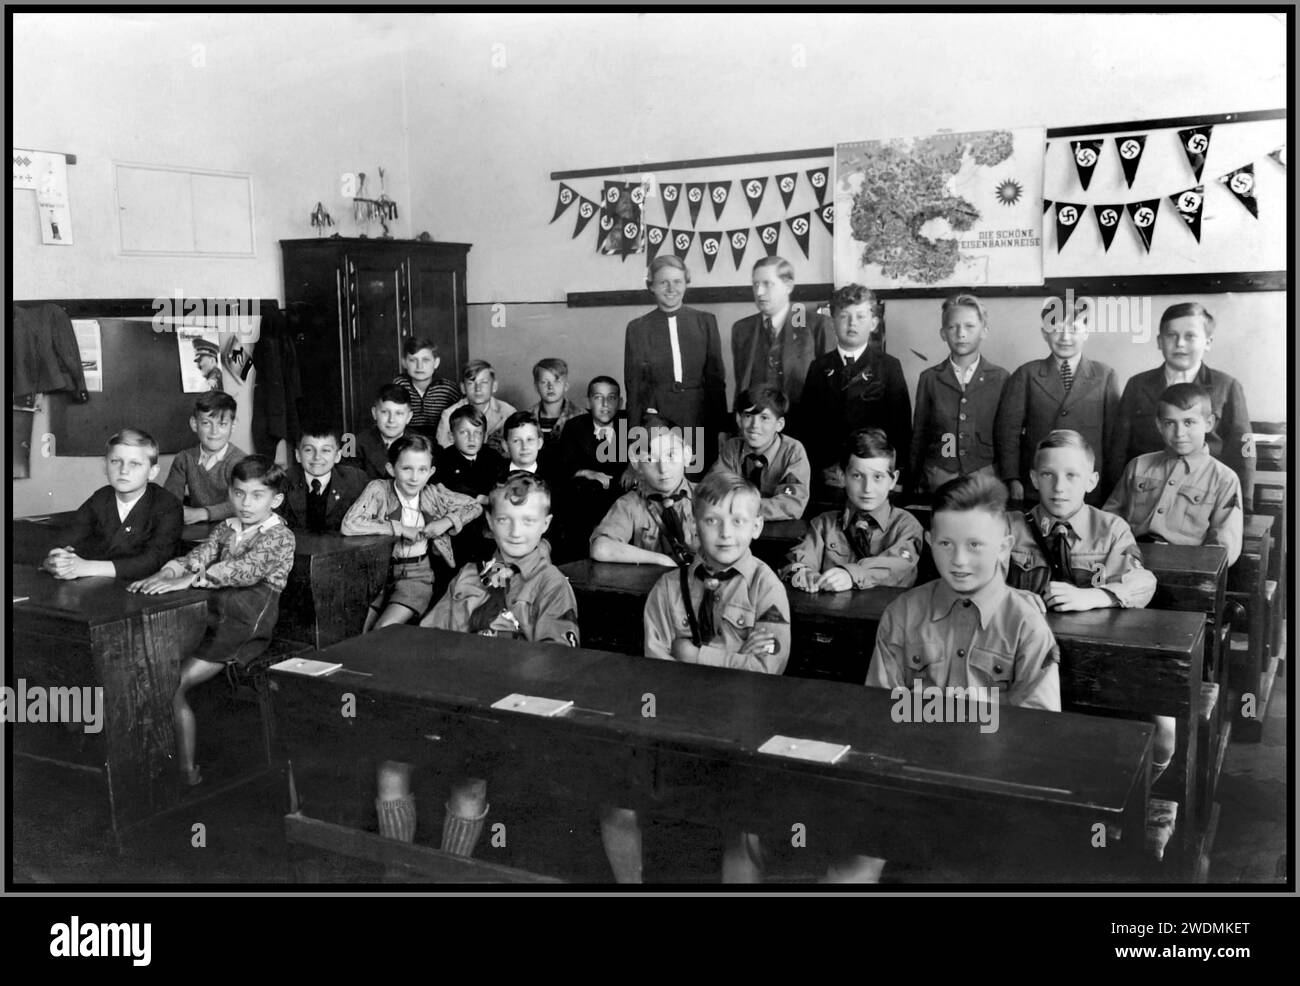 Scuola giovanile nazista degli anni '1930 con Hitler Youth Hitler Jugend Boys in uniorm in classe, con bandiere svastiche dietro, radicalizzazione nell'educazione scolastica Germania nazista degli anni '1930 Foto Stock